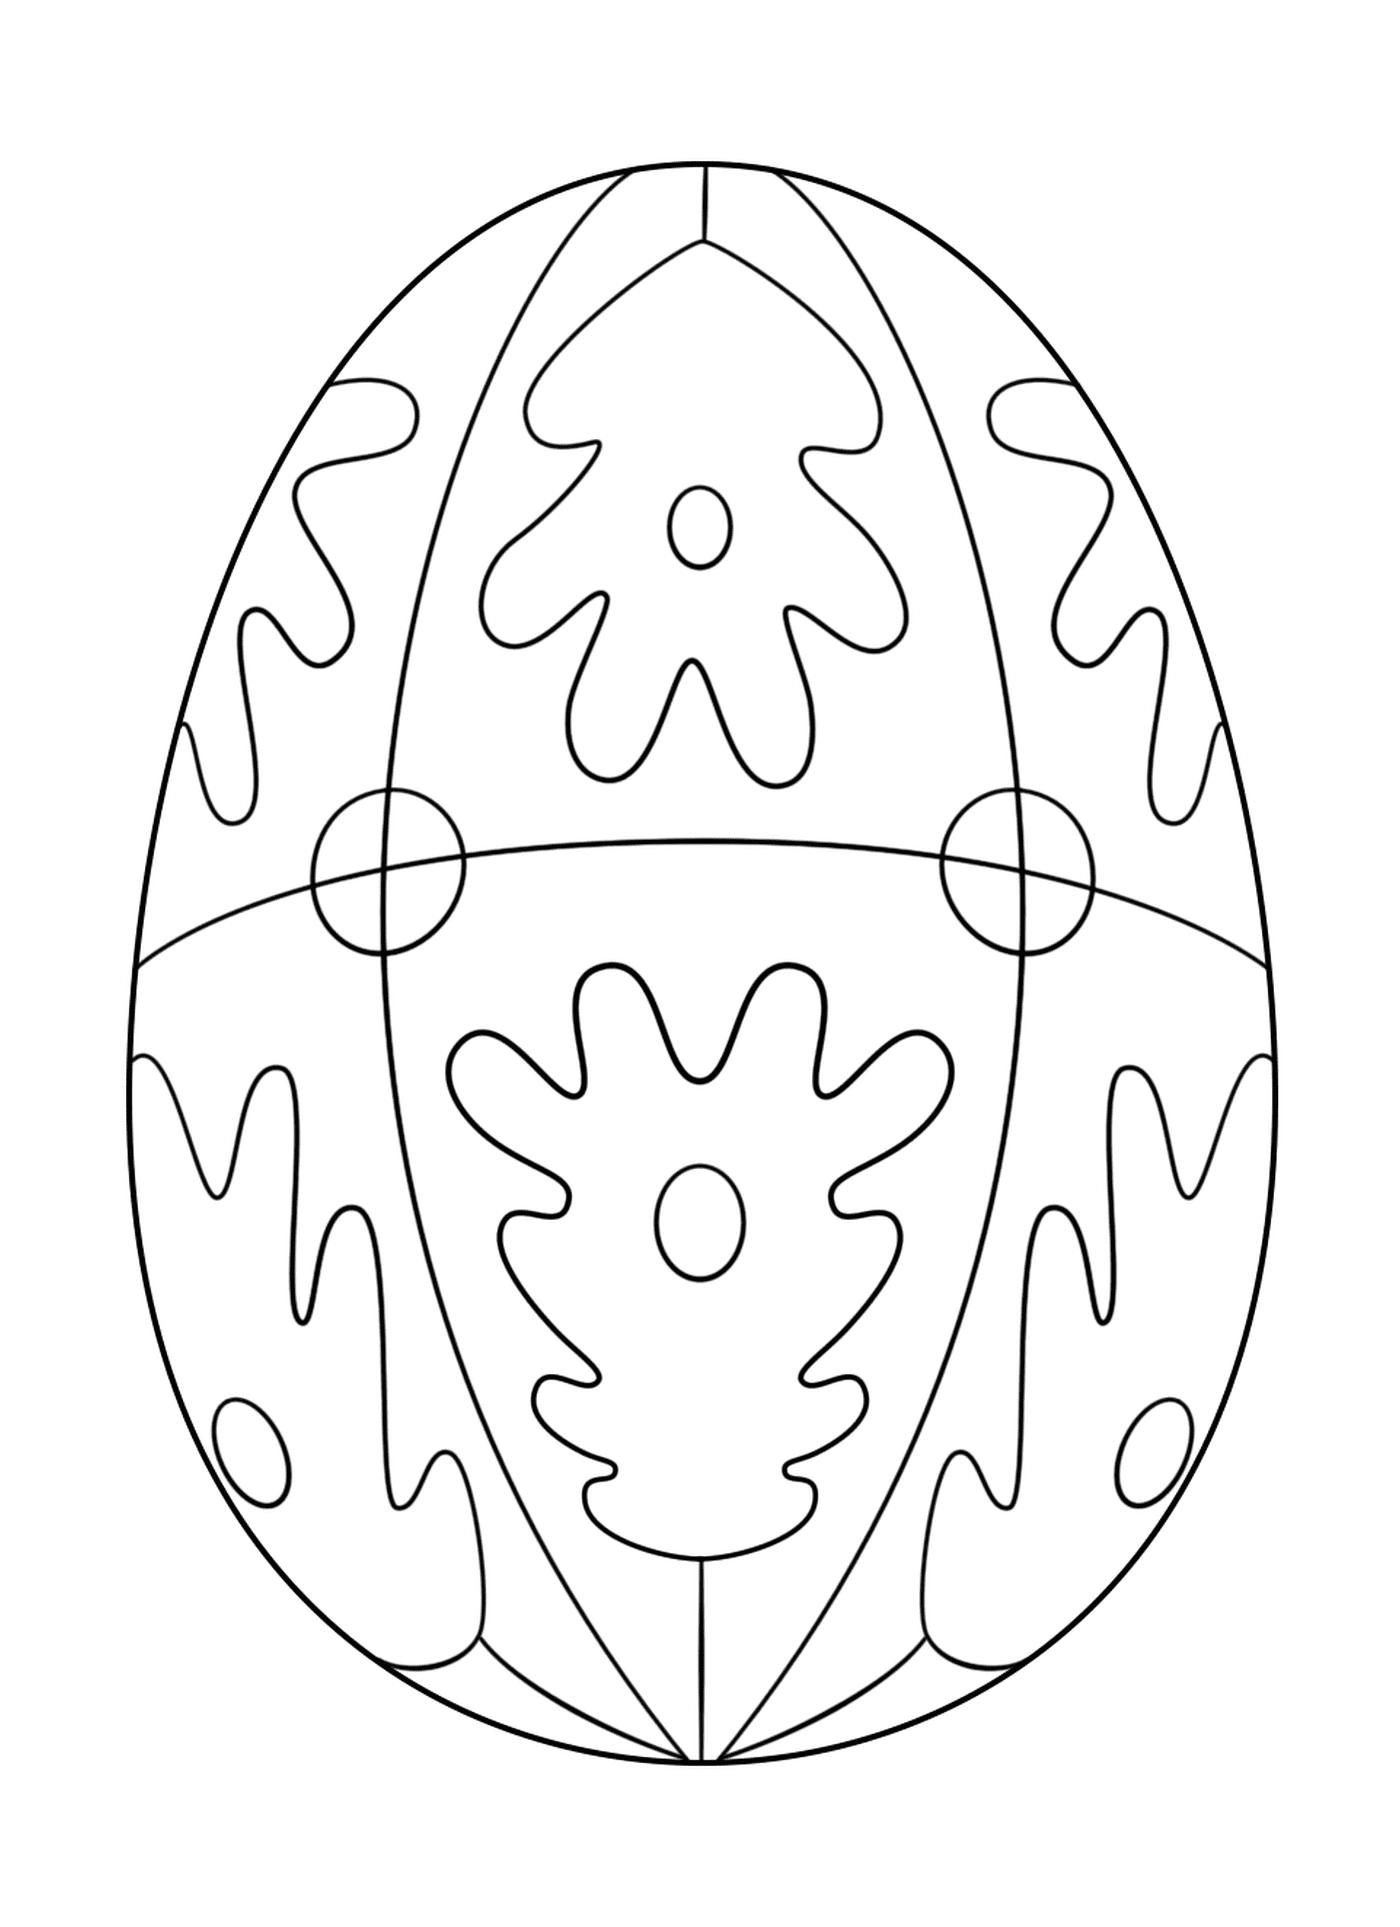  Ovo de Páscoa com padrão geométrico 